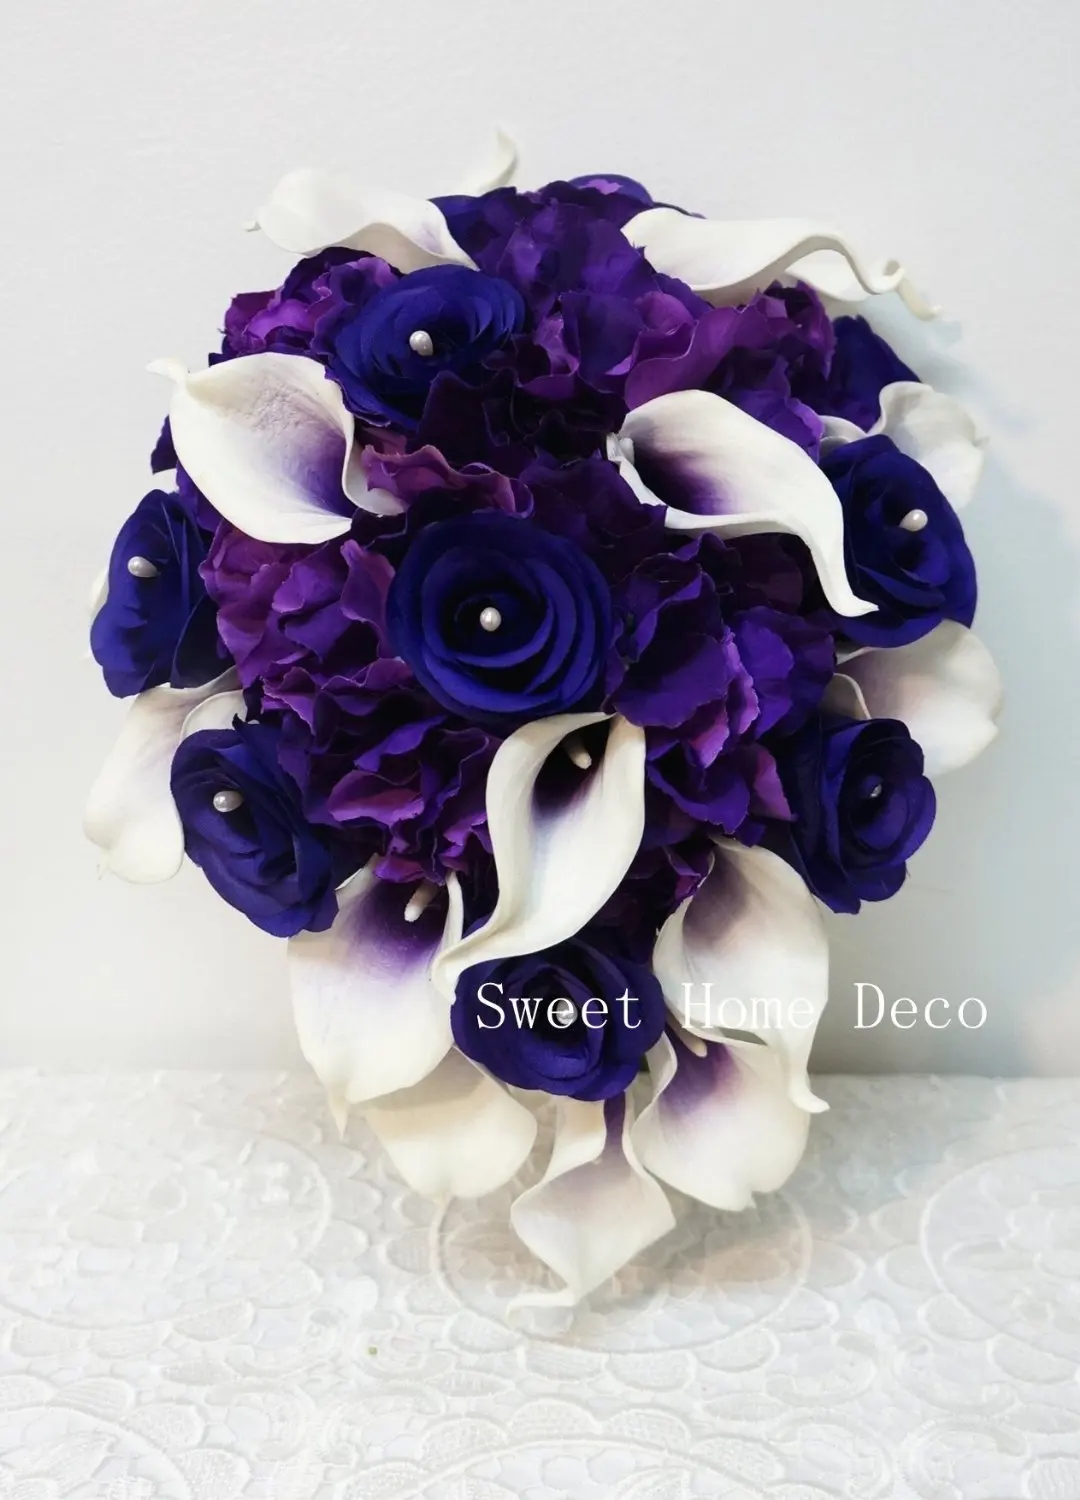 Cheap Wedding Flower Deco Find Wedding Flower Deco Deals On Line At